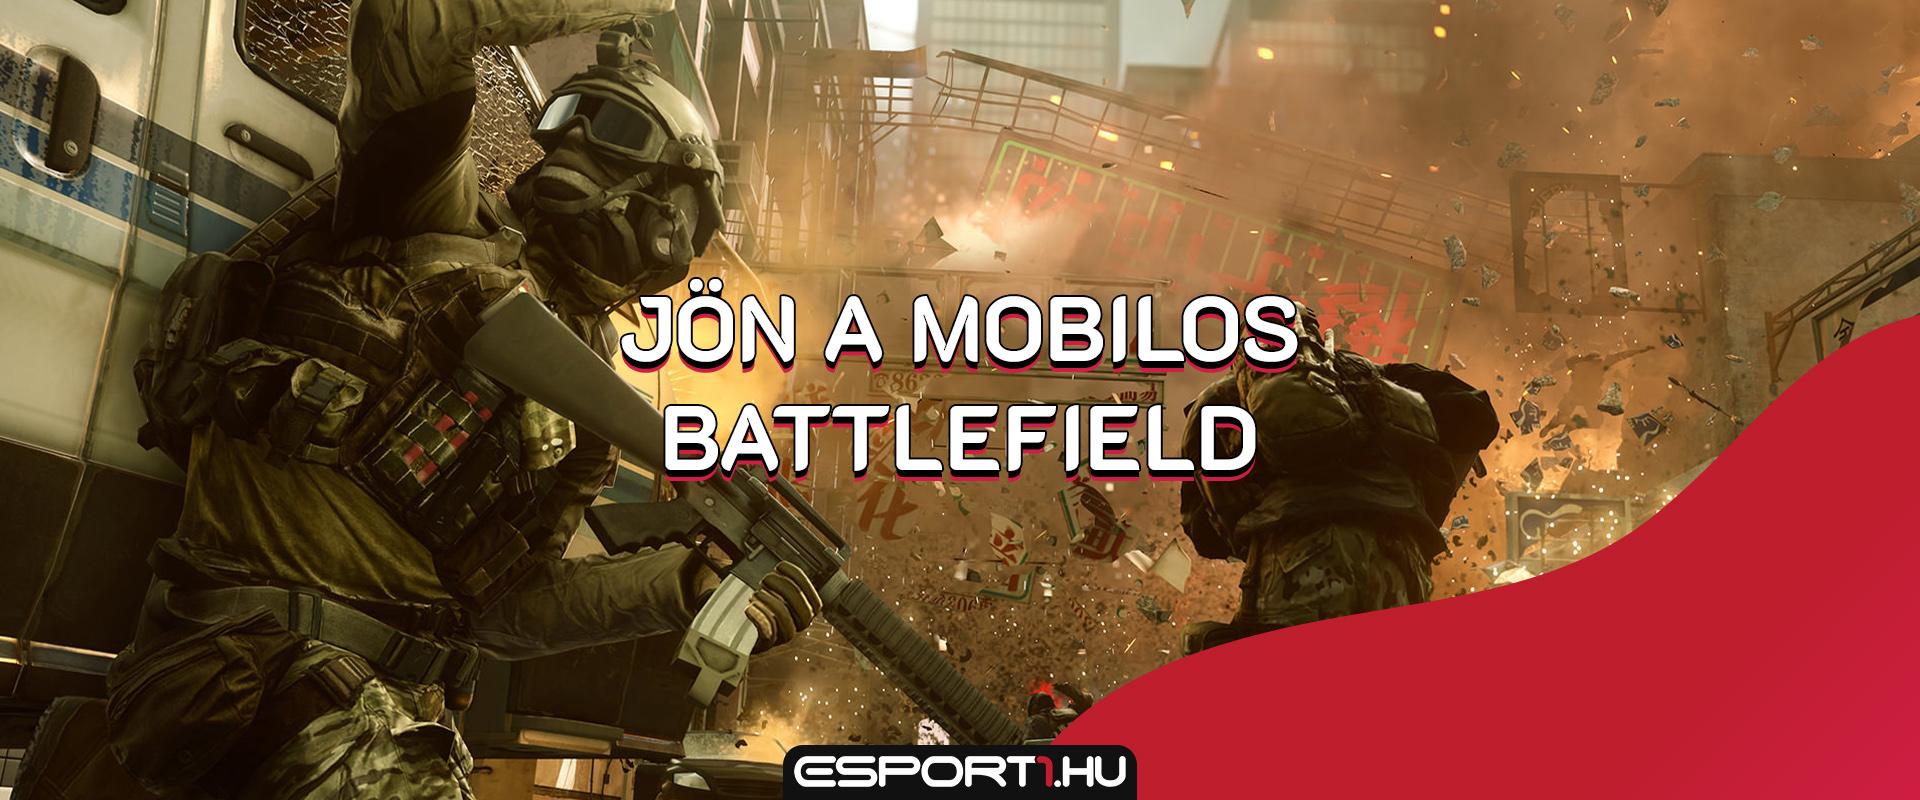 Gaming: Mobil eszközökre költözik a Battlefield sorozat